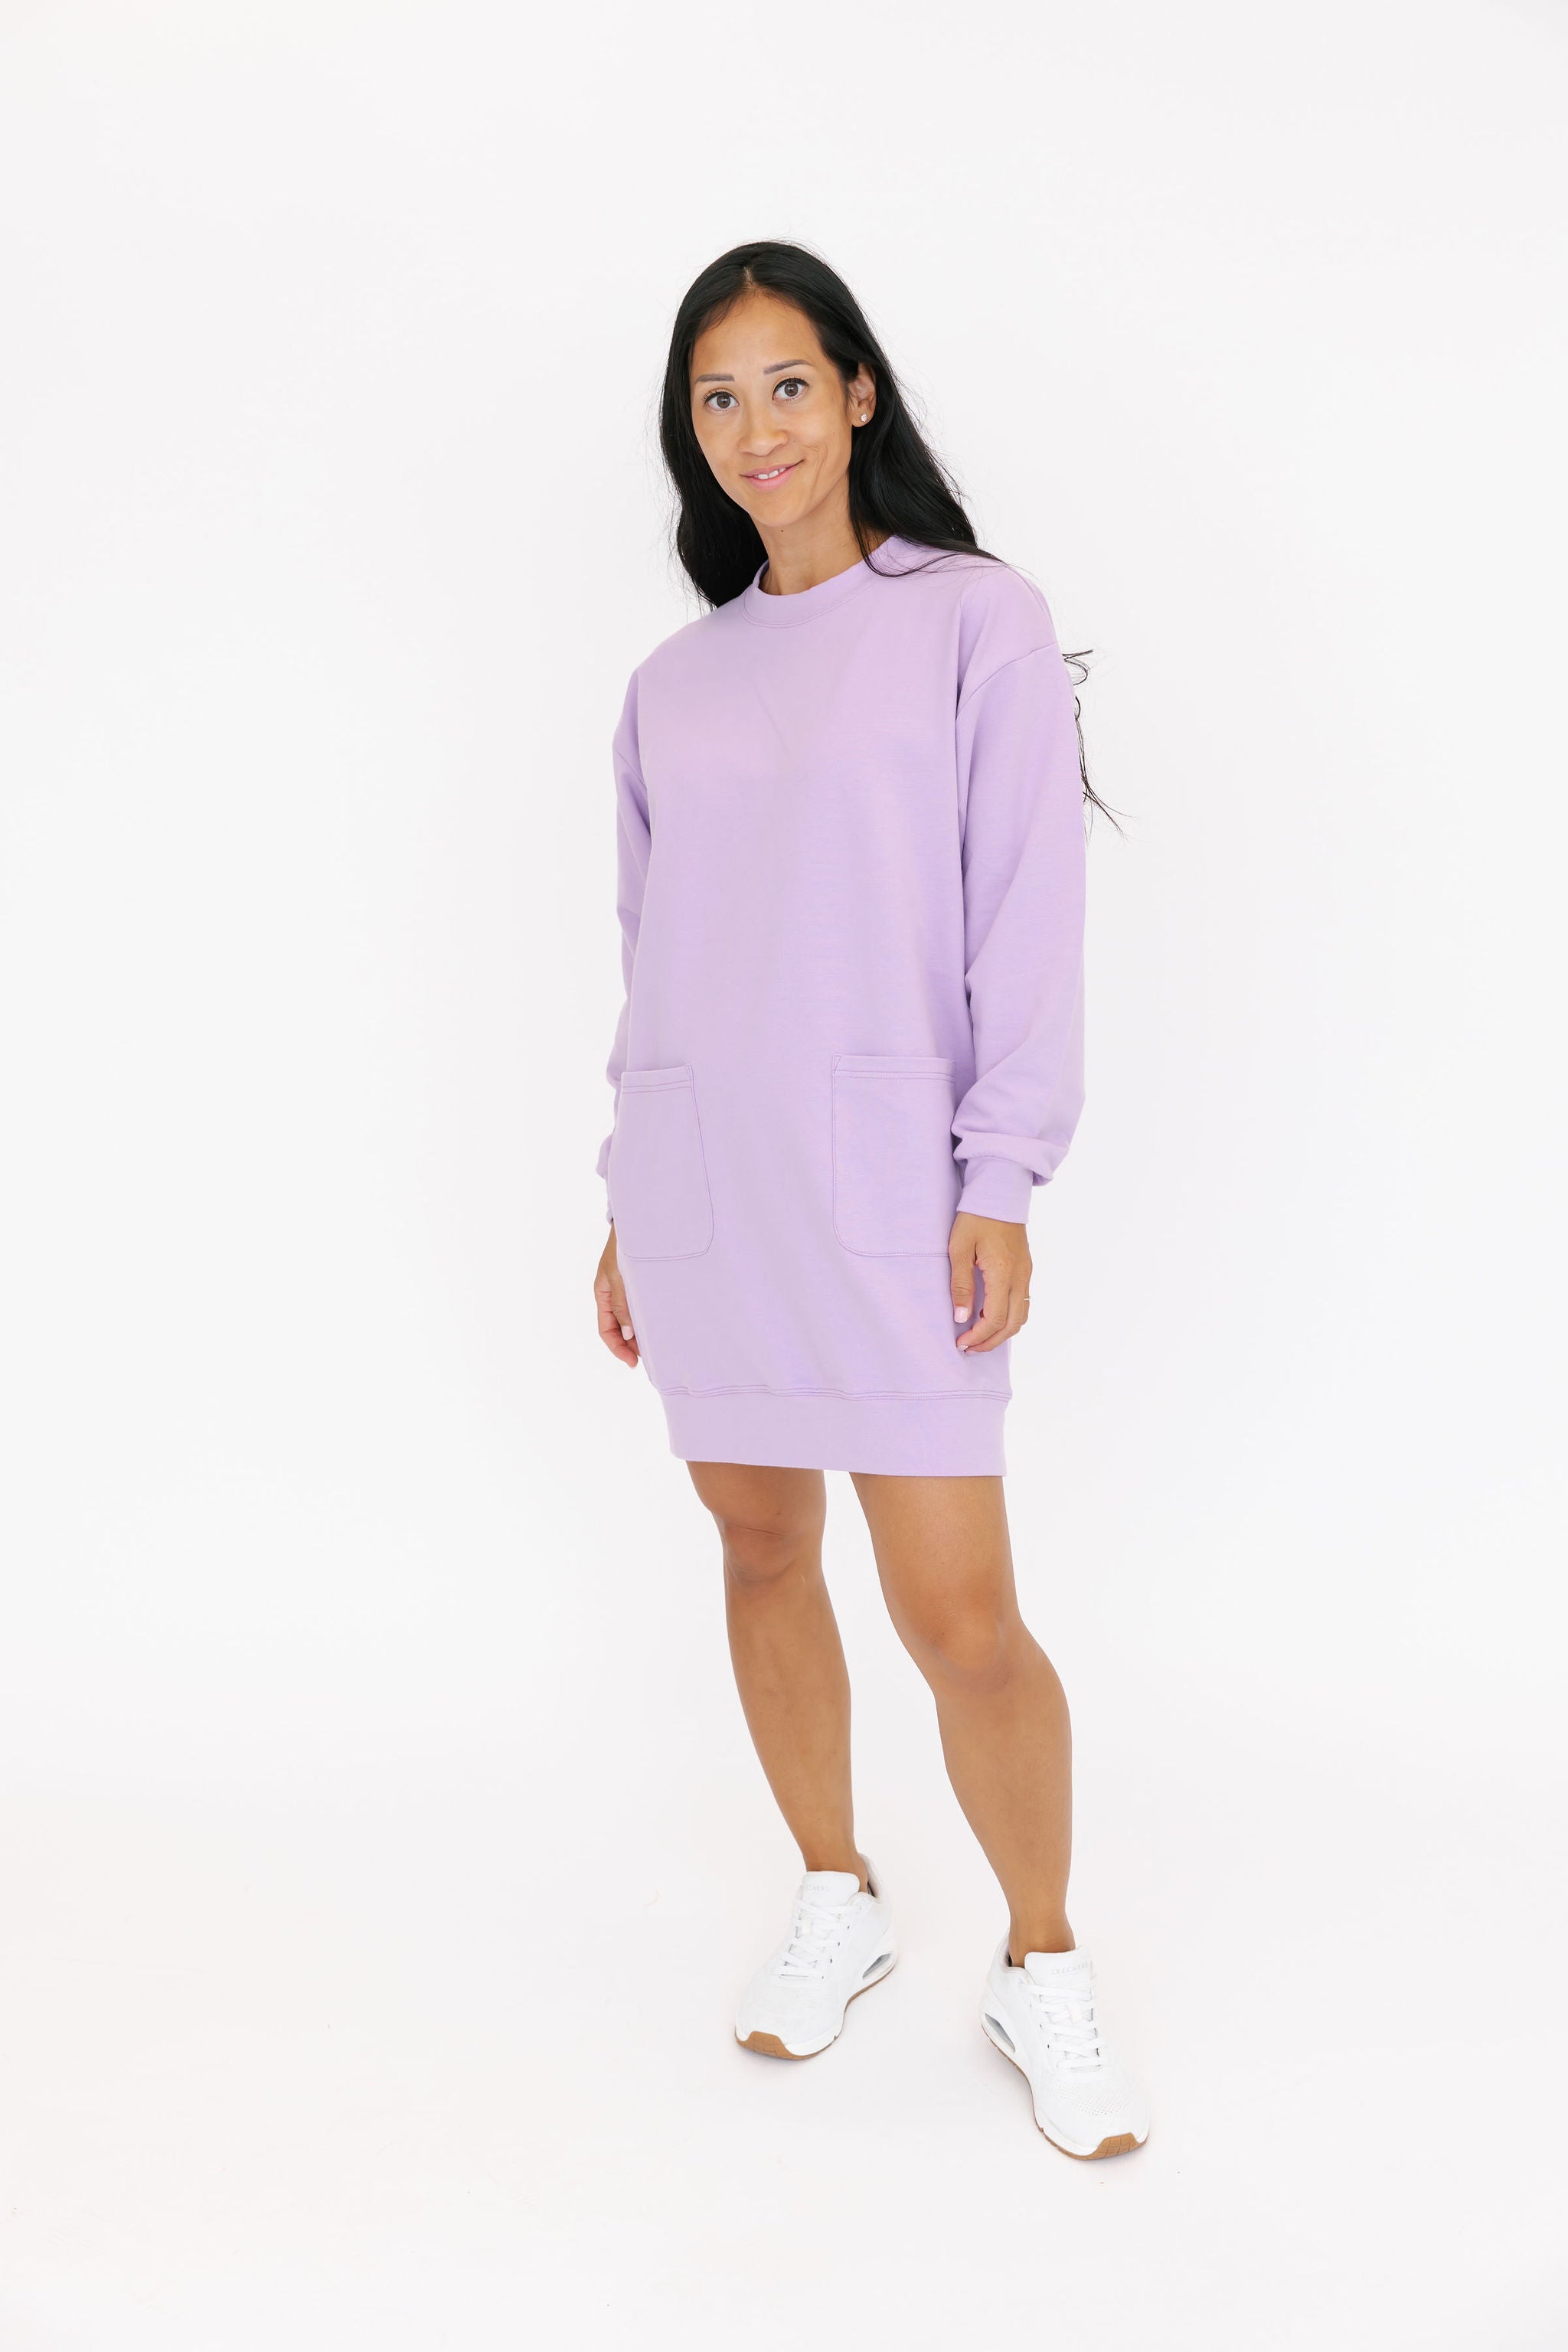 Prospect Mini Dress in Lovely Lavender